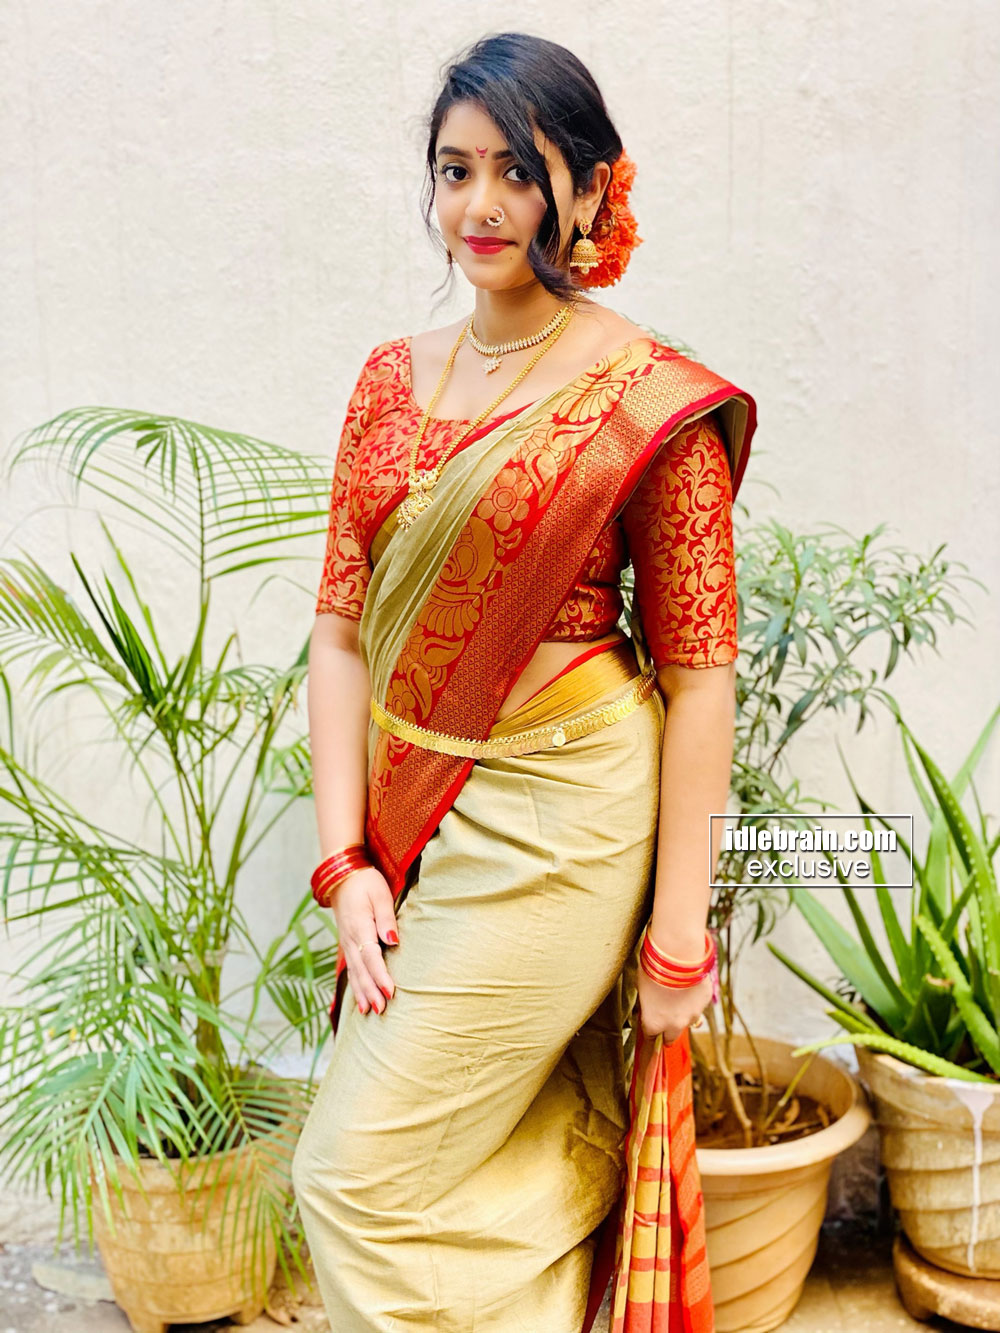 Nakshatra photo gallery - Telugu cinema actress